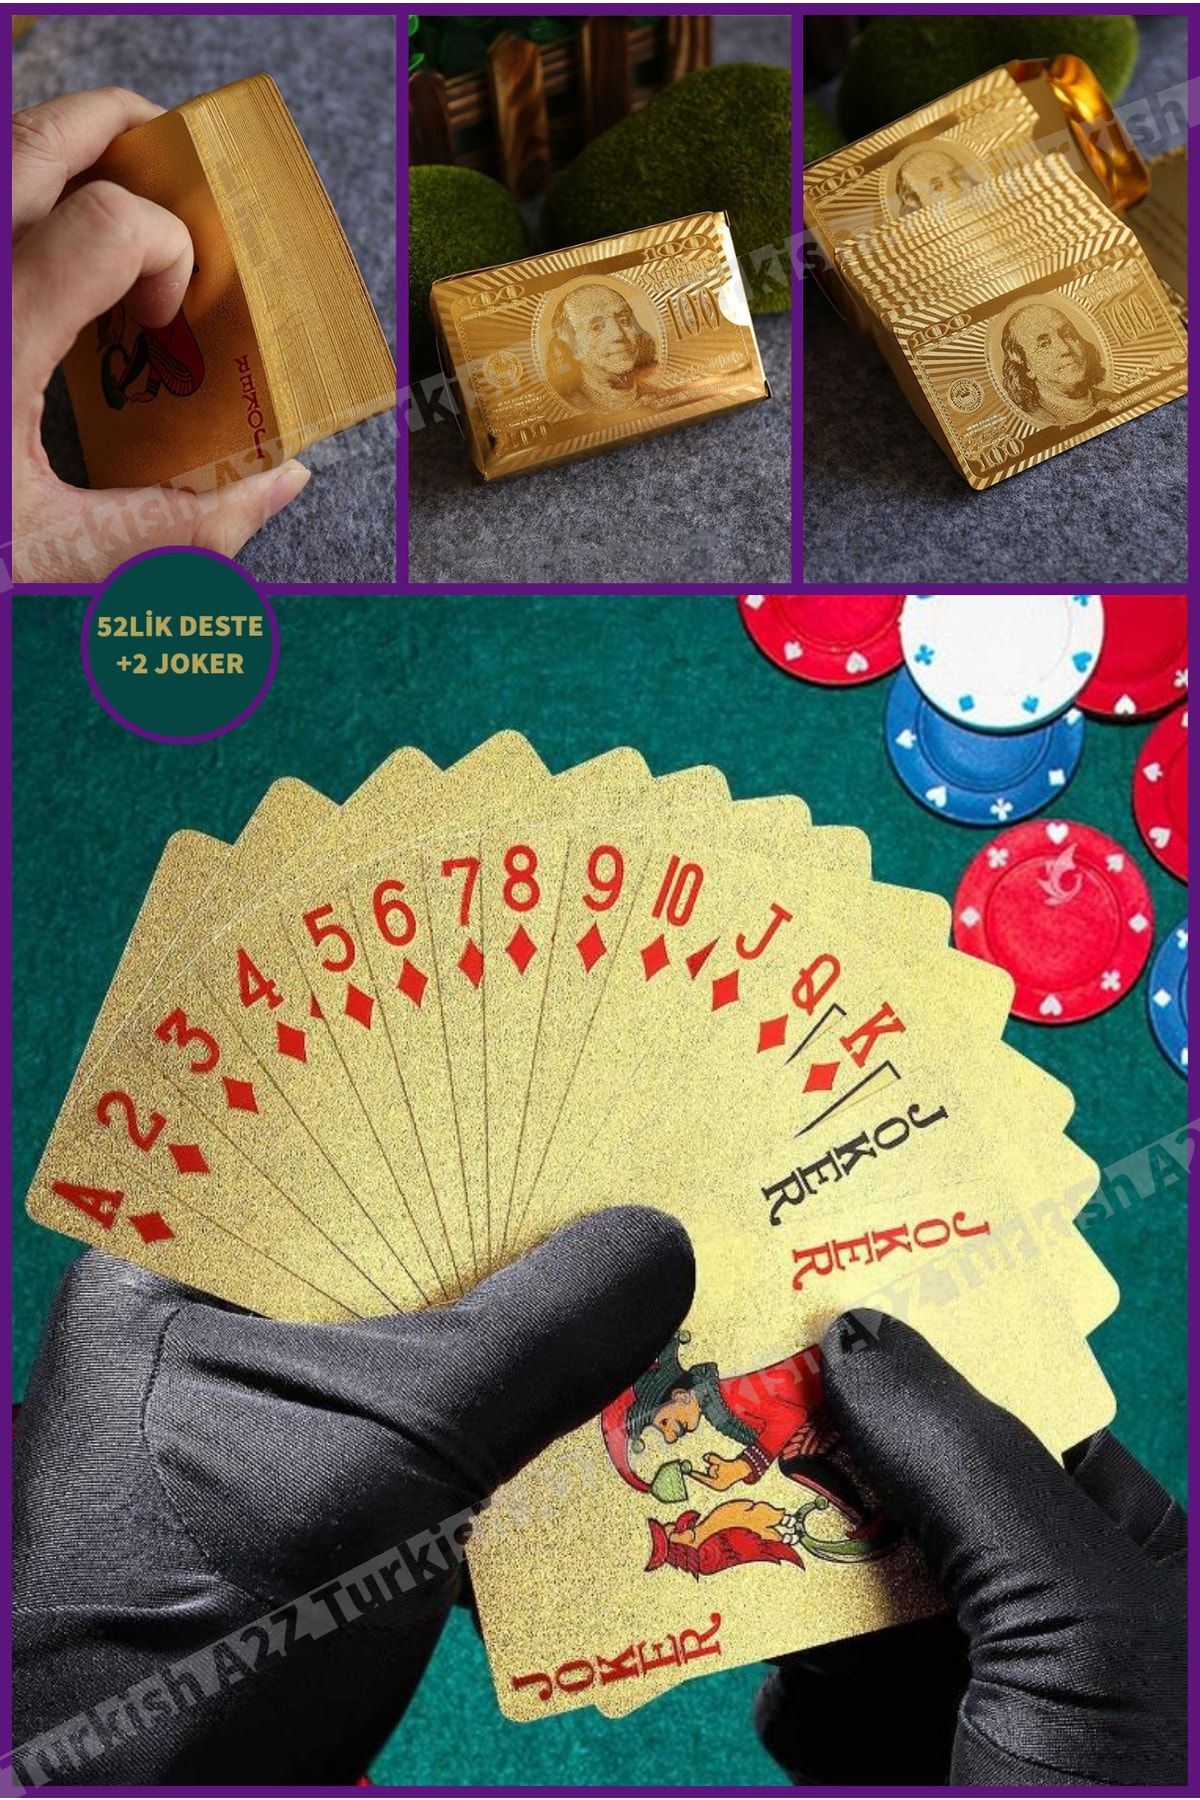 Zzn Poker Iskambil Oyun Kartları Kaplama Deste Kağıt Oyunu Seti